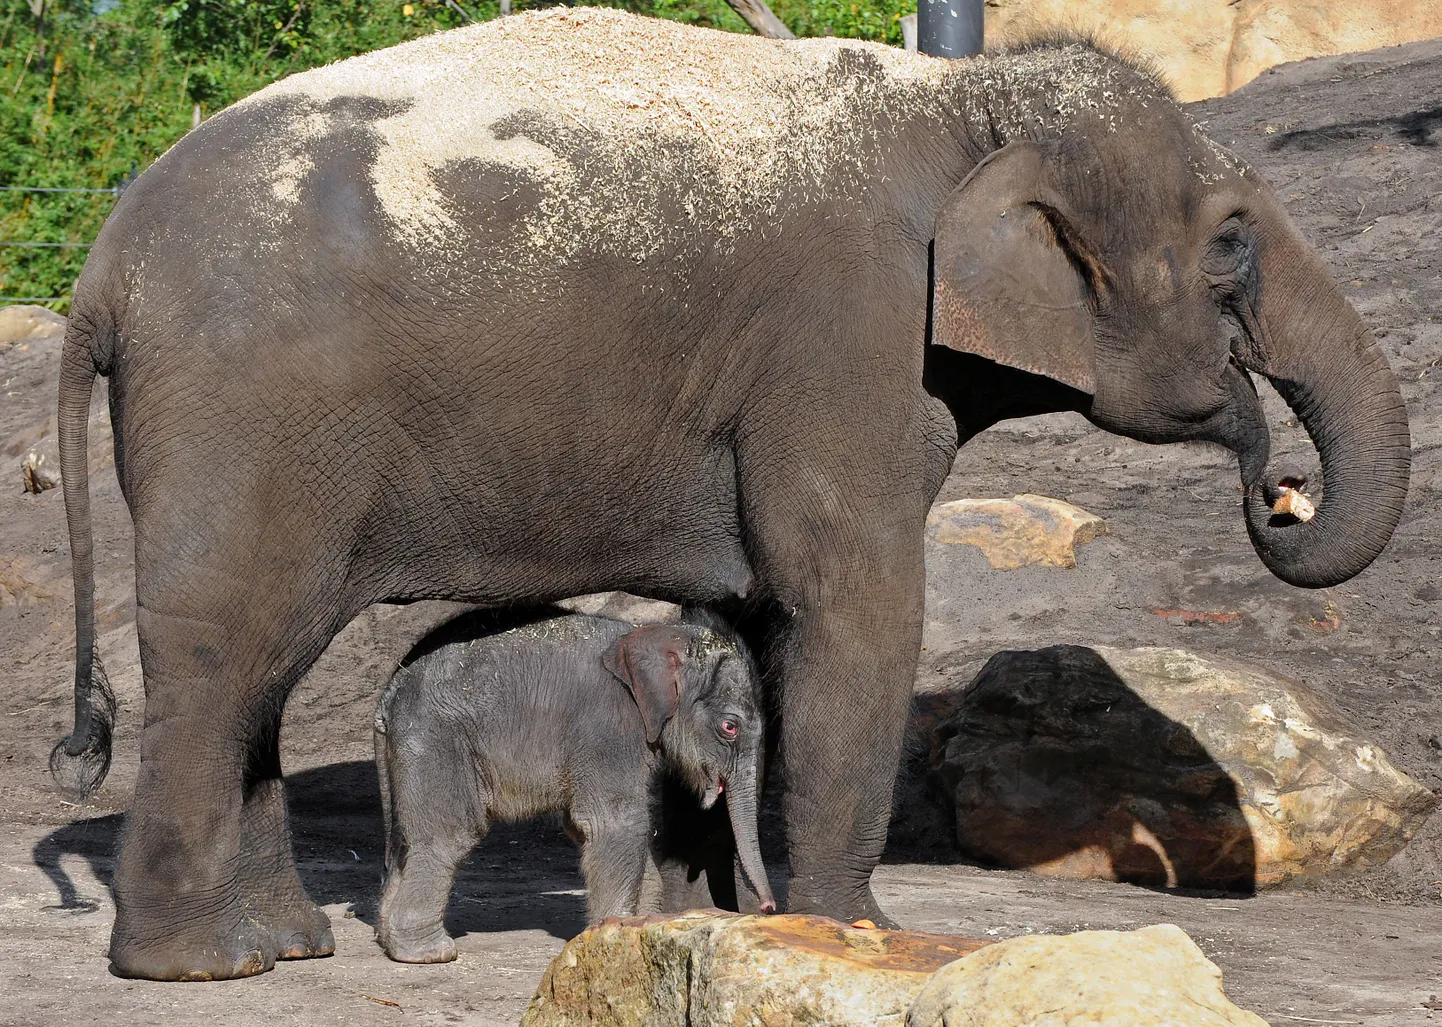 Nelja päeva vanune elevandipoiss koos oma emaga esimesel avalikul esinemisel Taronga loomaaias Sydneys.